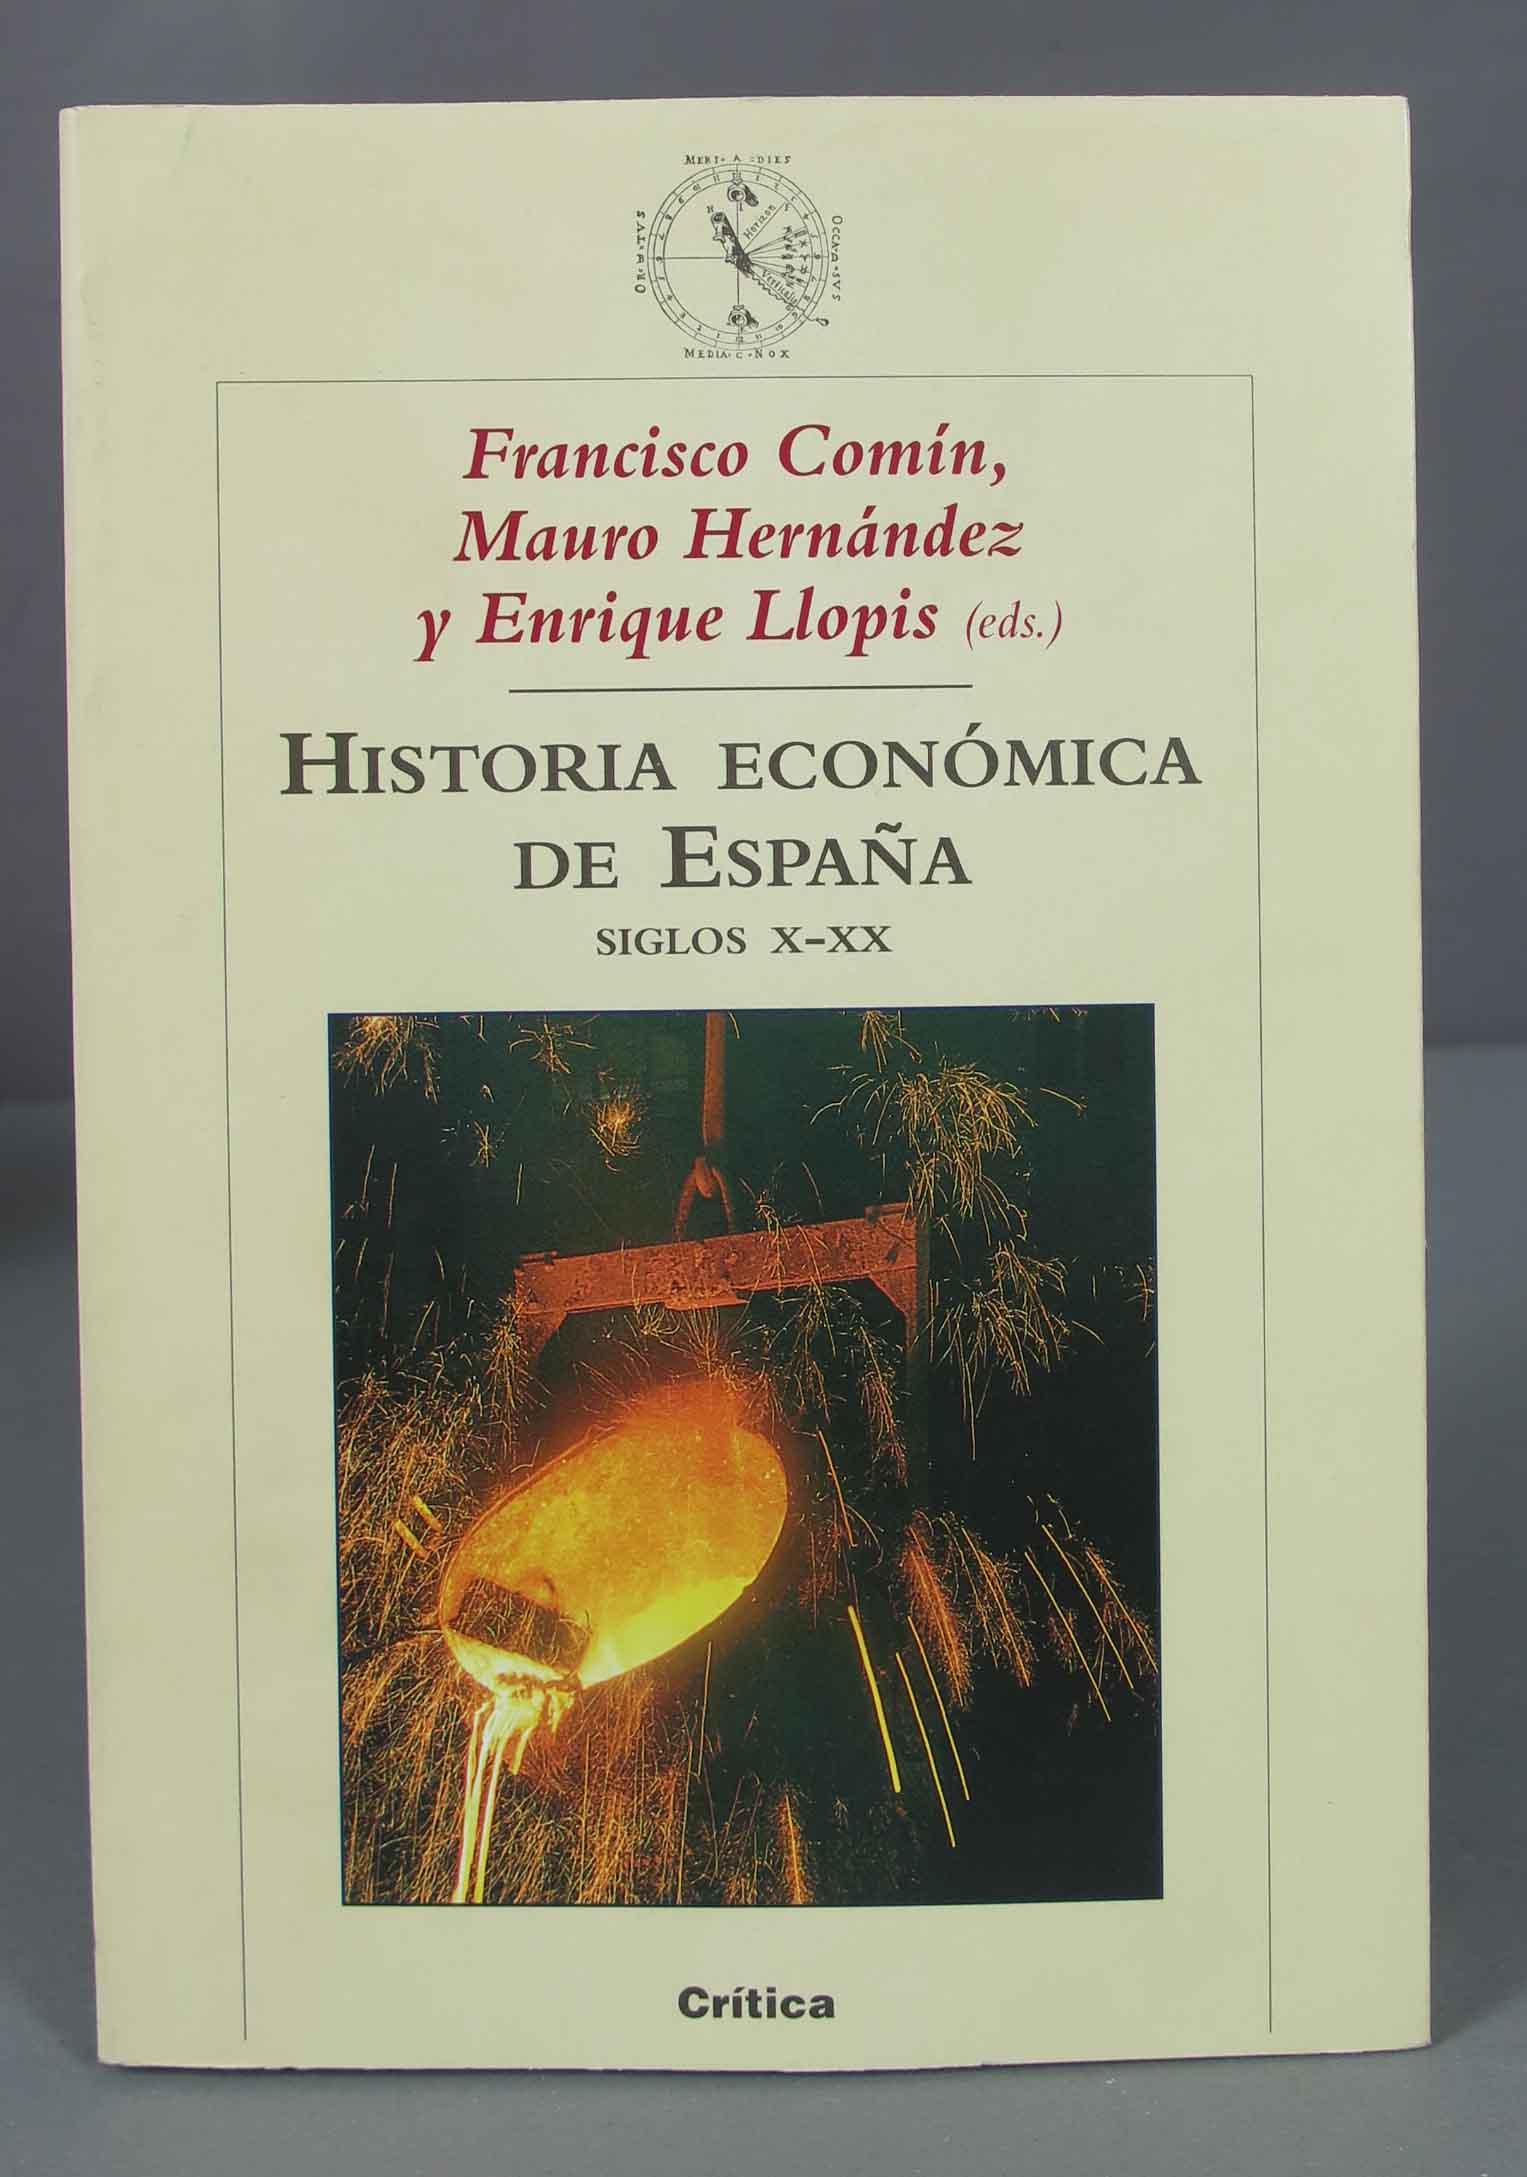 Historia económica de España. Enrique Llopis - Enrique Llopis